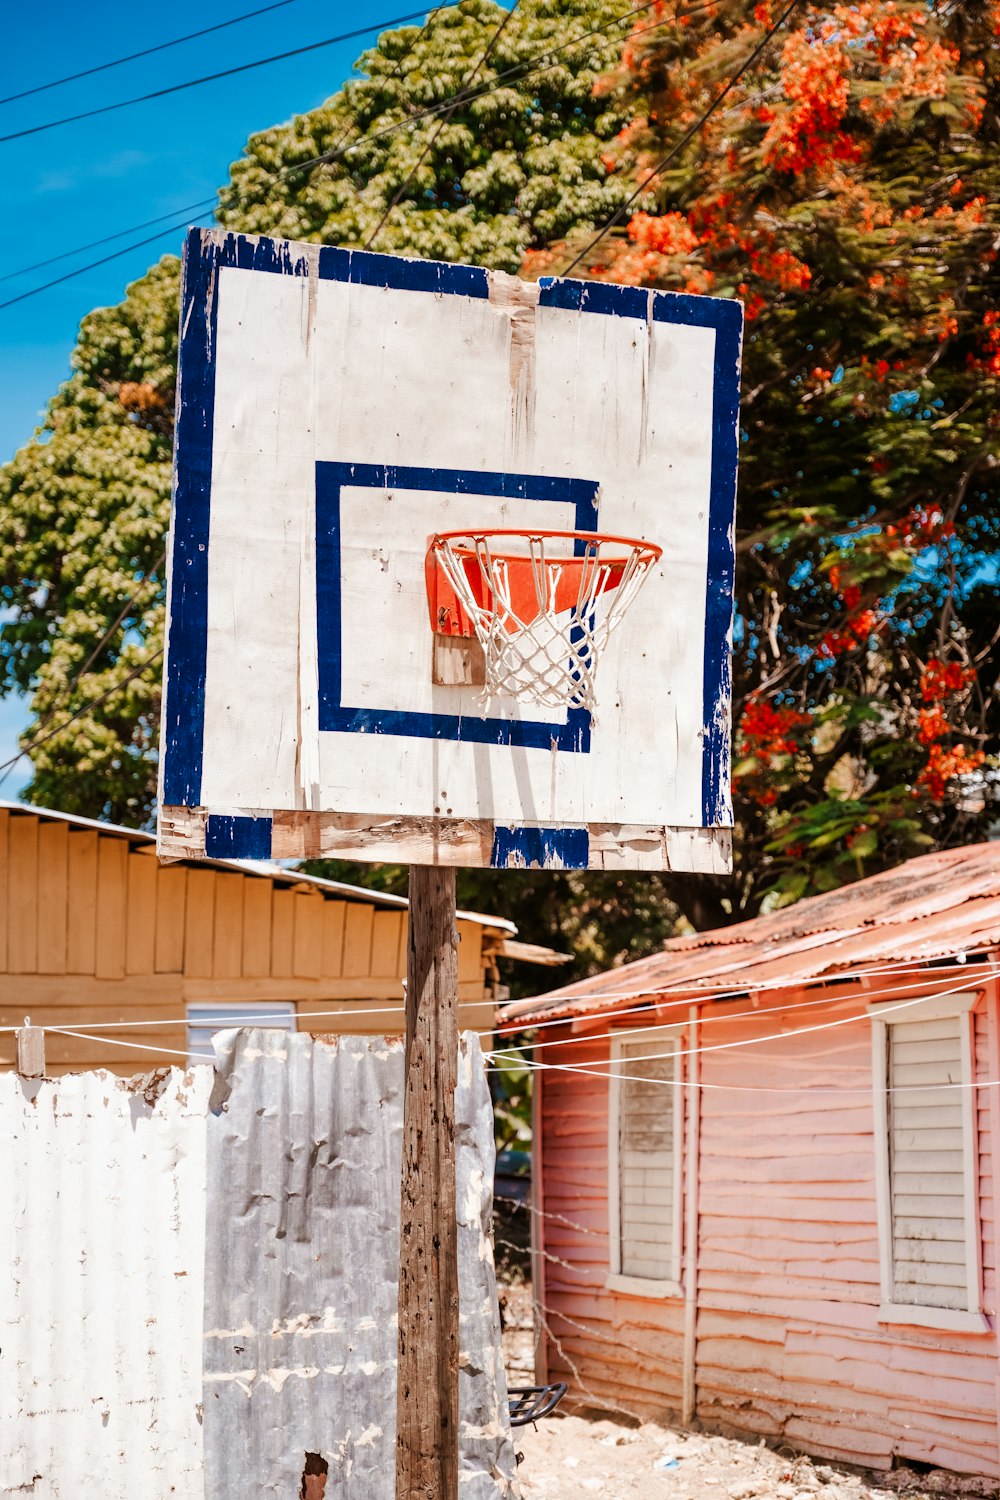 木の棒の上に座っている青と白のバスケットボールのフープ